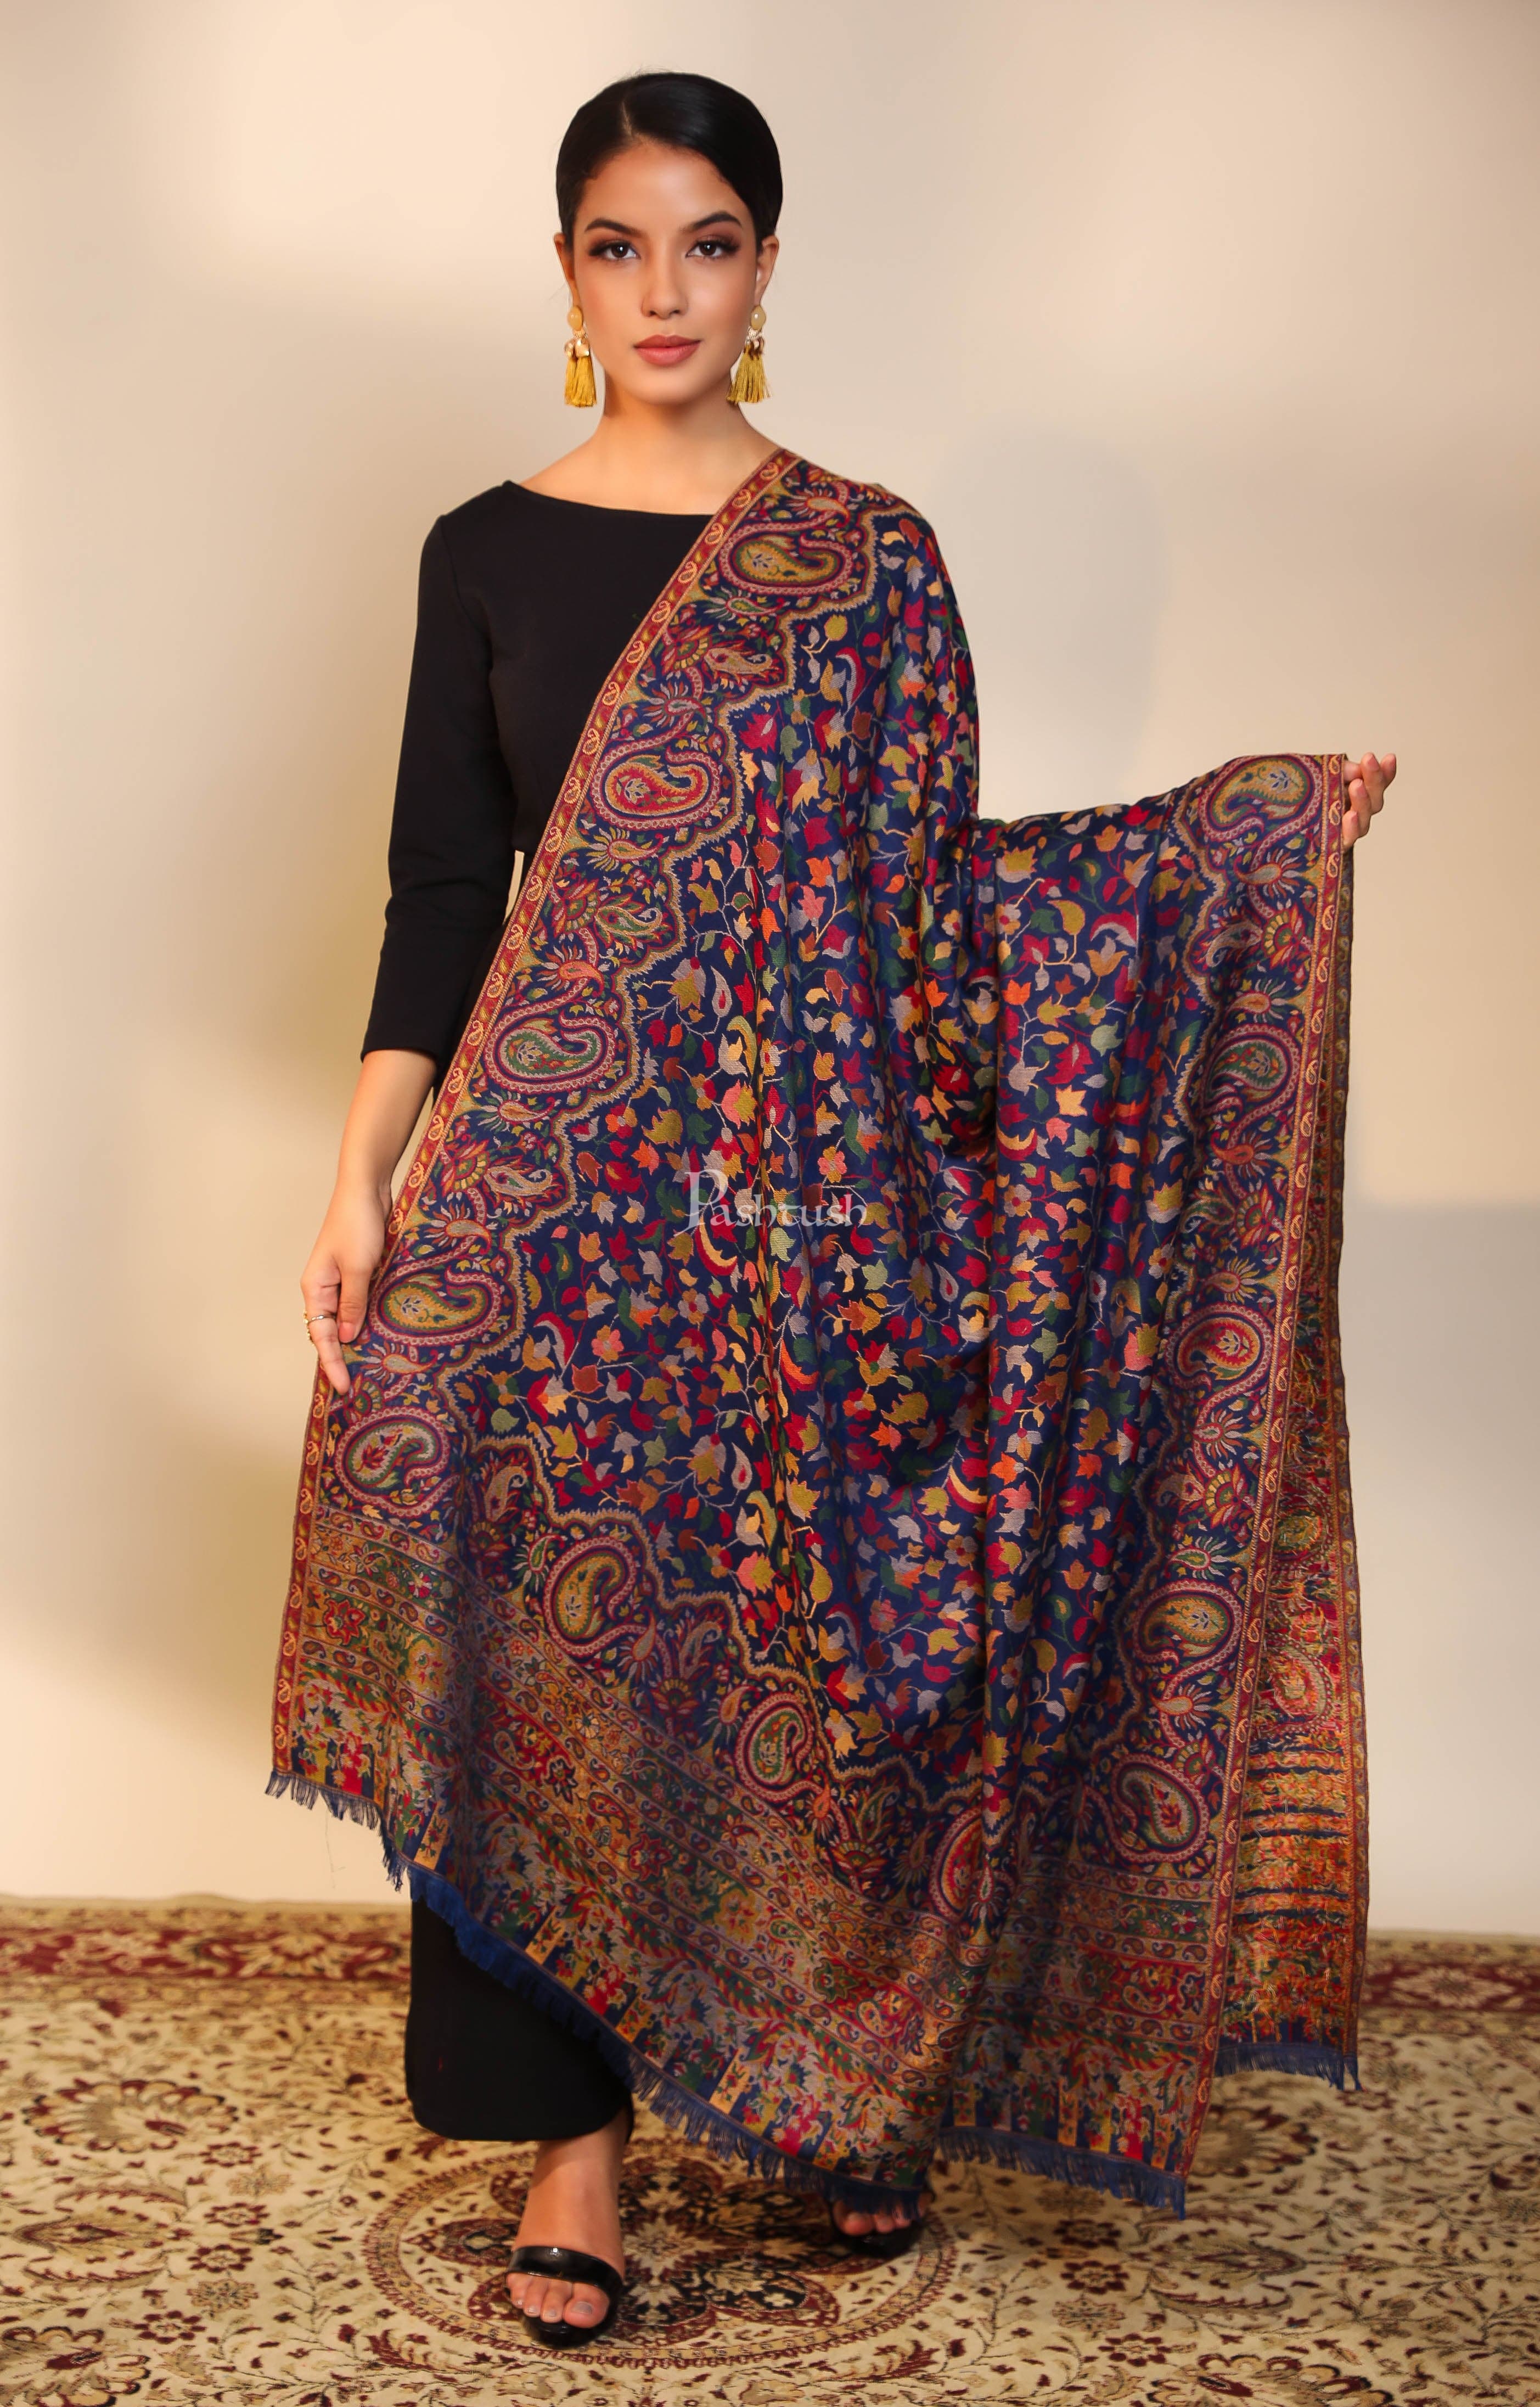 Pashtush Womens faux pashmina shawl, ethnic weave design, multi color –  Pashtush Shawl Store